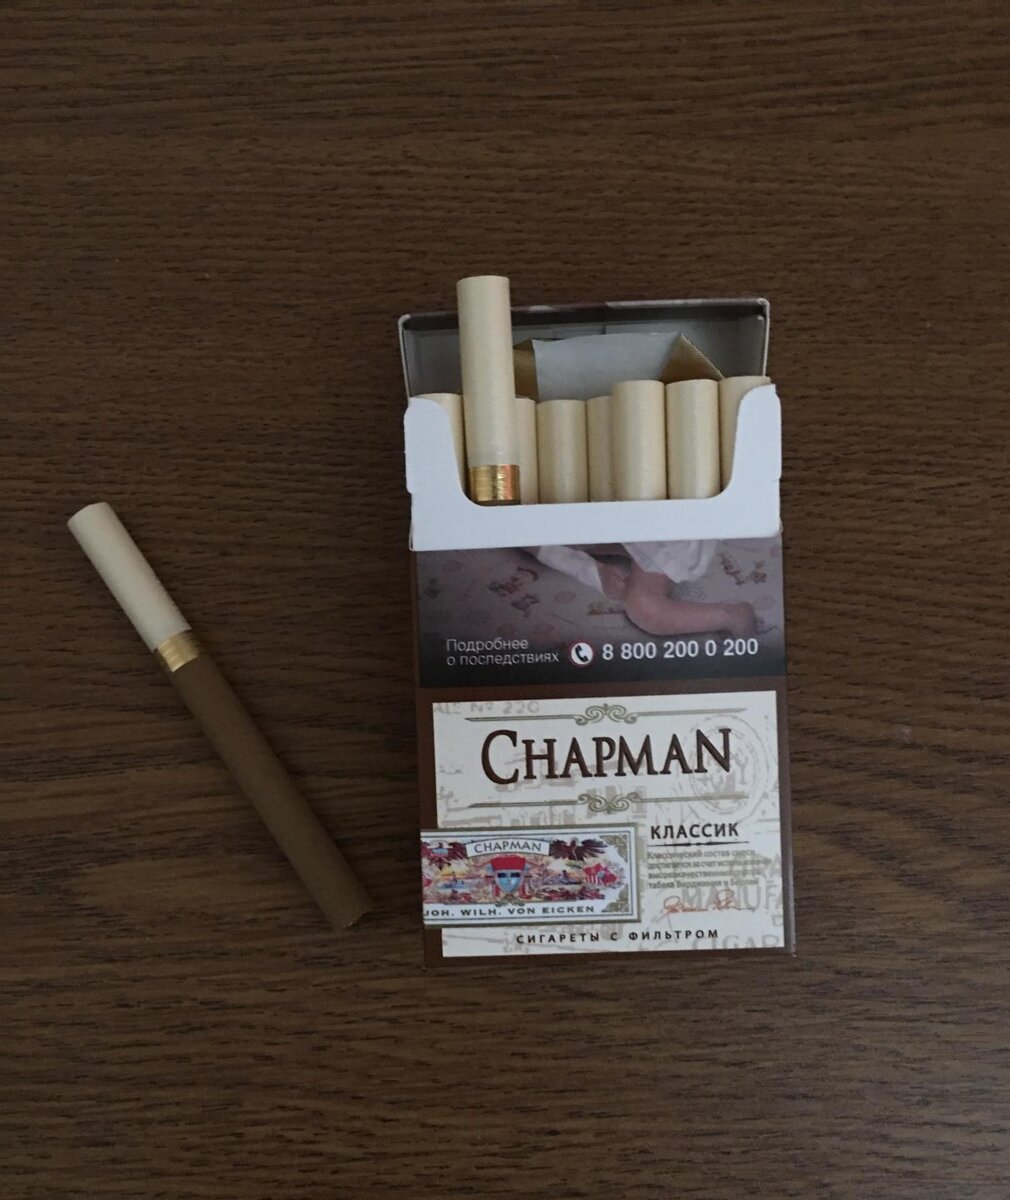 Ванильные сигареты. Сигареты Чапман Браун тонкие. Чапмен сигареты Классик. Chapman сигареты вкусы Браун. Чапман сигареты класси.